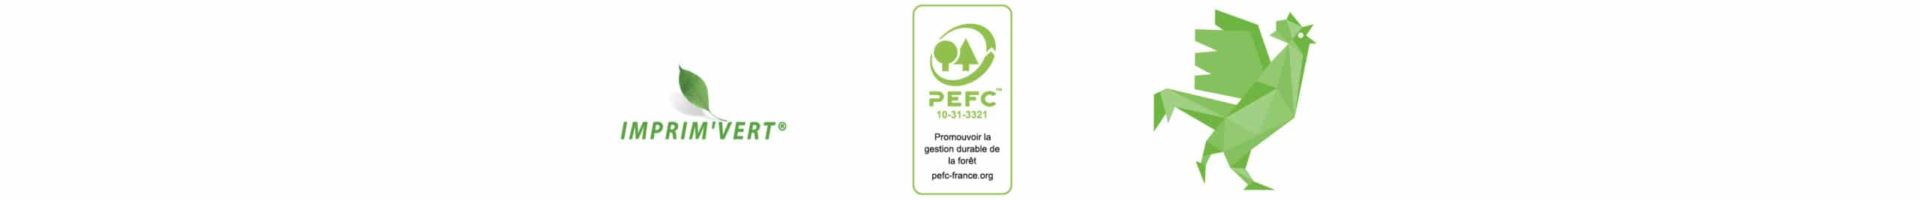 les badges de certifications de l'écologie en vert